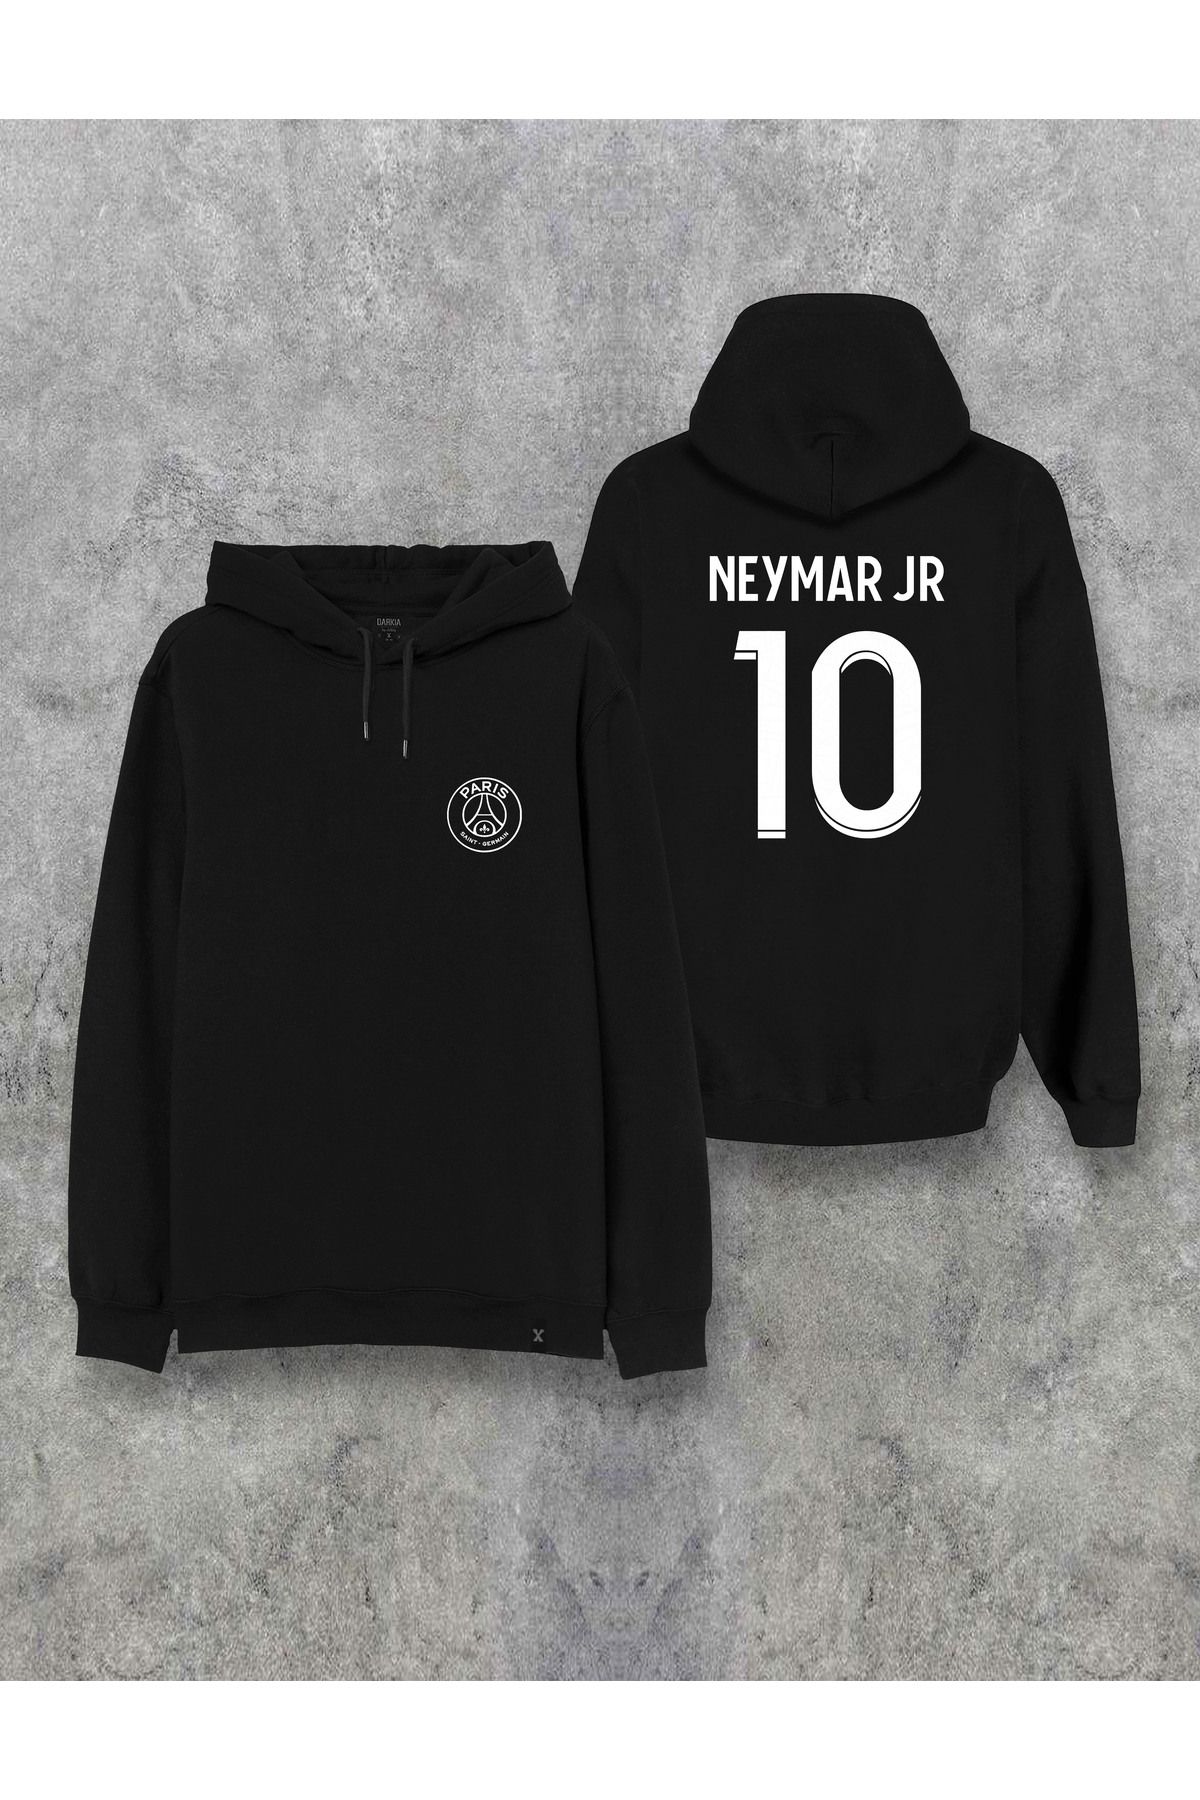 Darkia Neymar JR 10 Forma Özel Tasarım Baskılı Kapşonlu Unisex Sweatshirt Hoodie